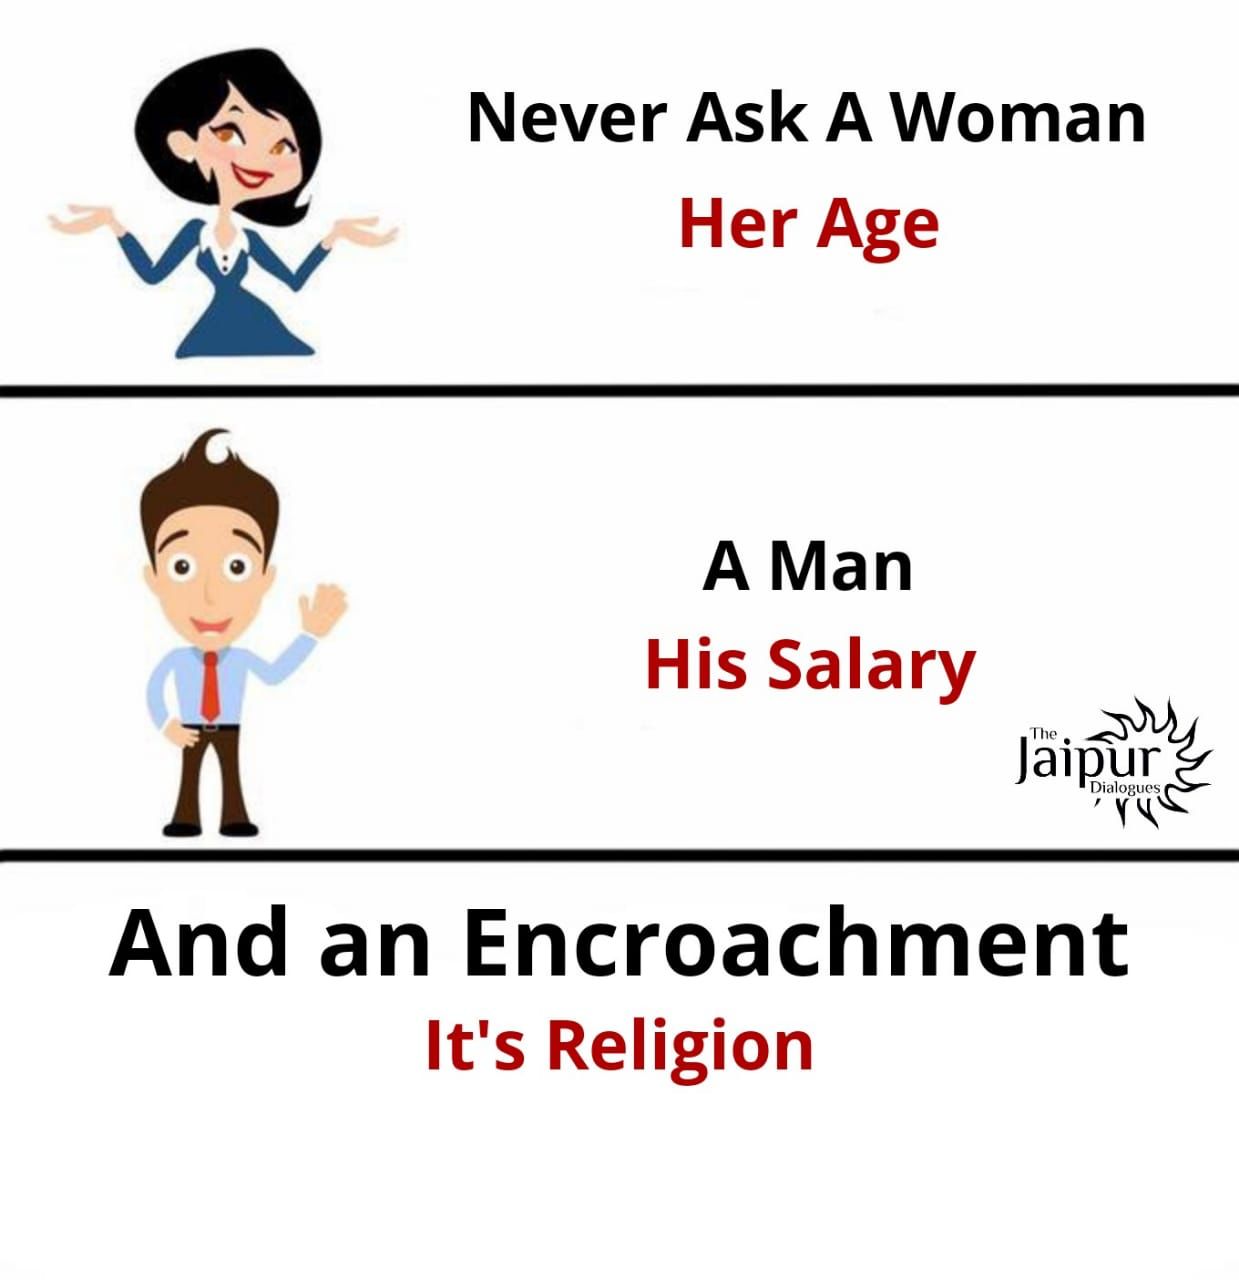 Encroachment has No Religion